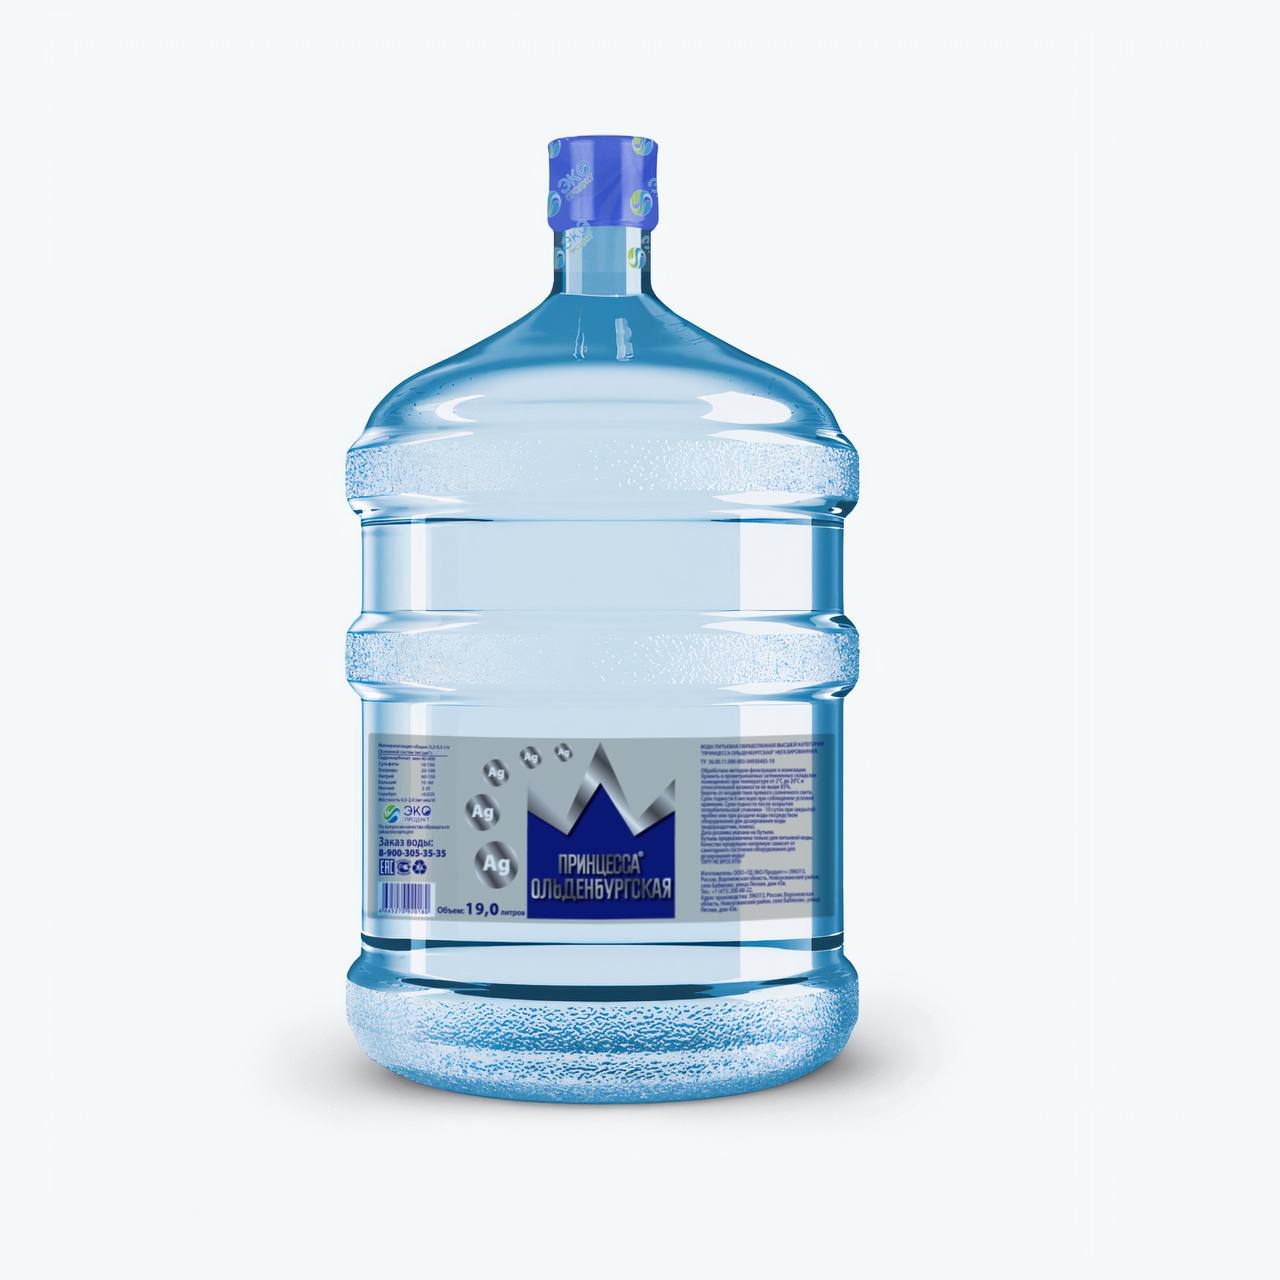 Обработанная питьевая вода. Вода 19 литров. Обеззараживание питьевой воды ионами серебра. Принцесса воды. Бутылка 19 л воды без фона.